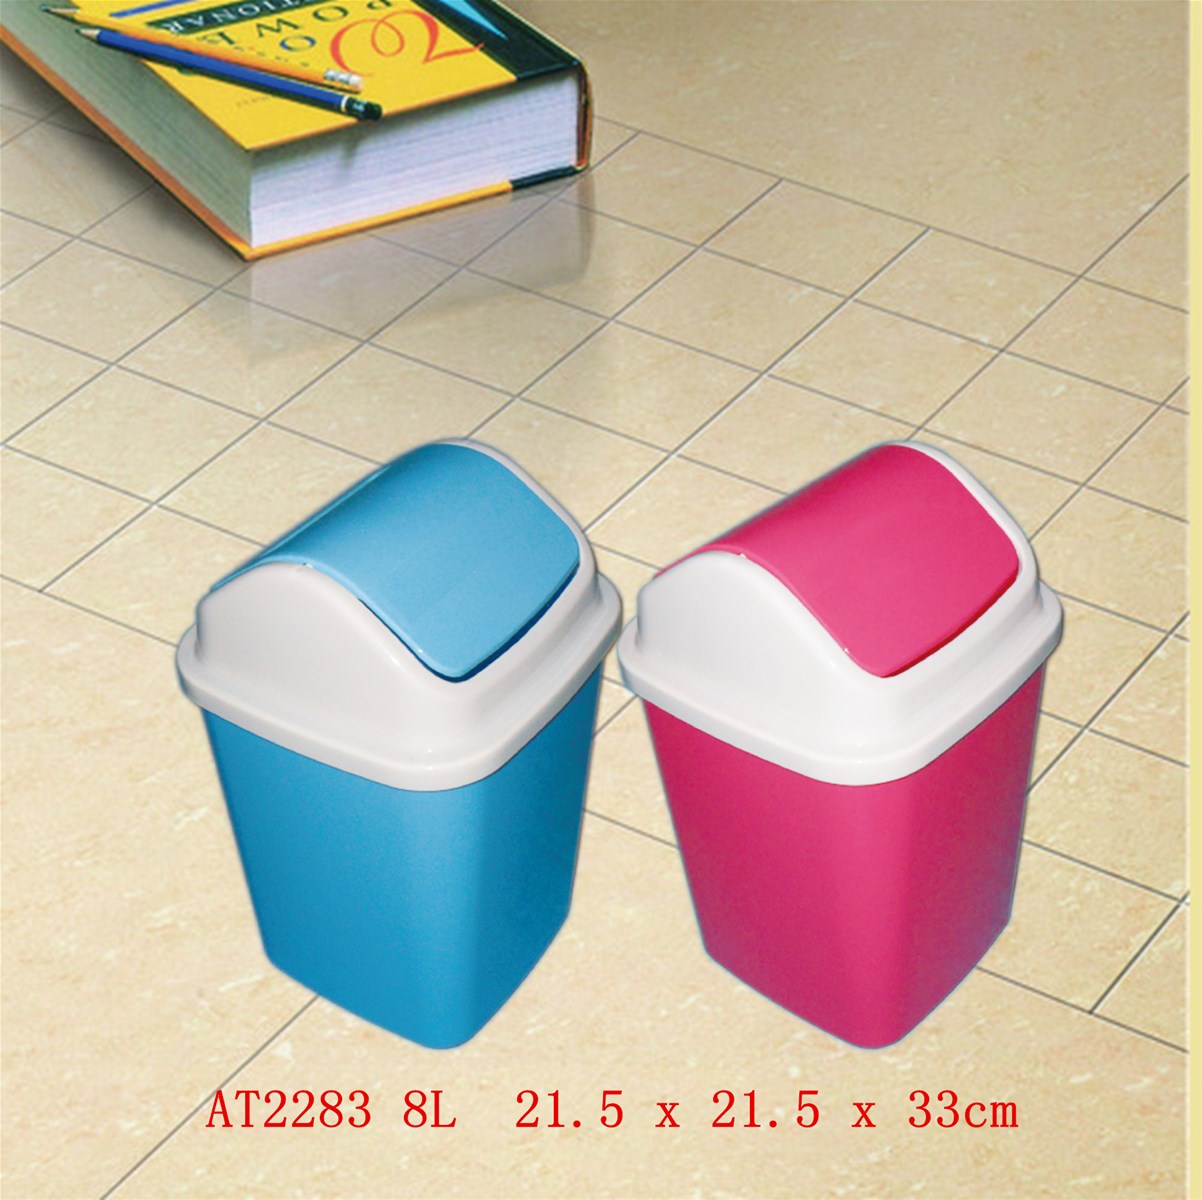 New design low price home PP plastic dustbin series rubbish bin